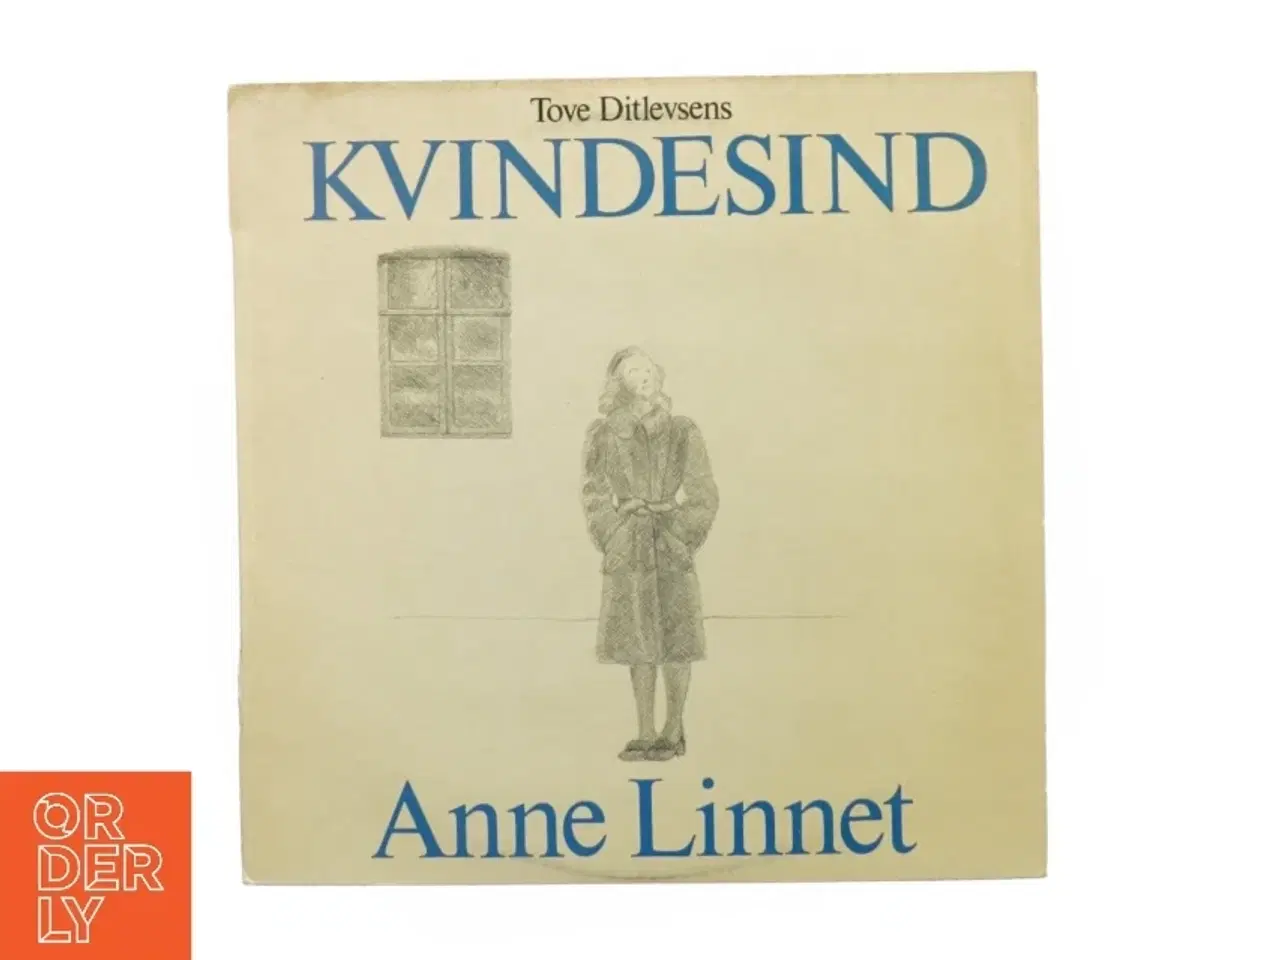 Billede 1 - Tove Ditlevsen kvindesind, Anne Linnet fra Exlibris (str. 30 cm)